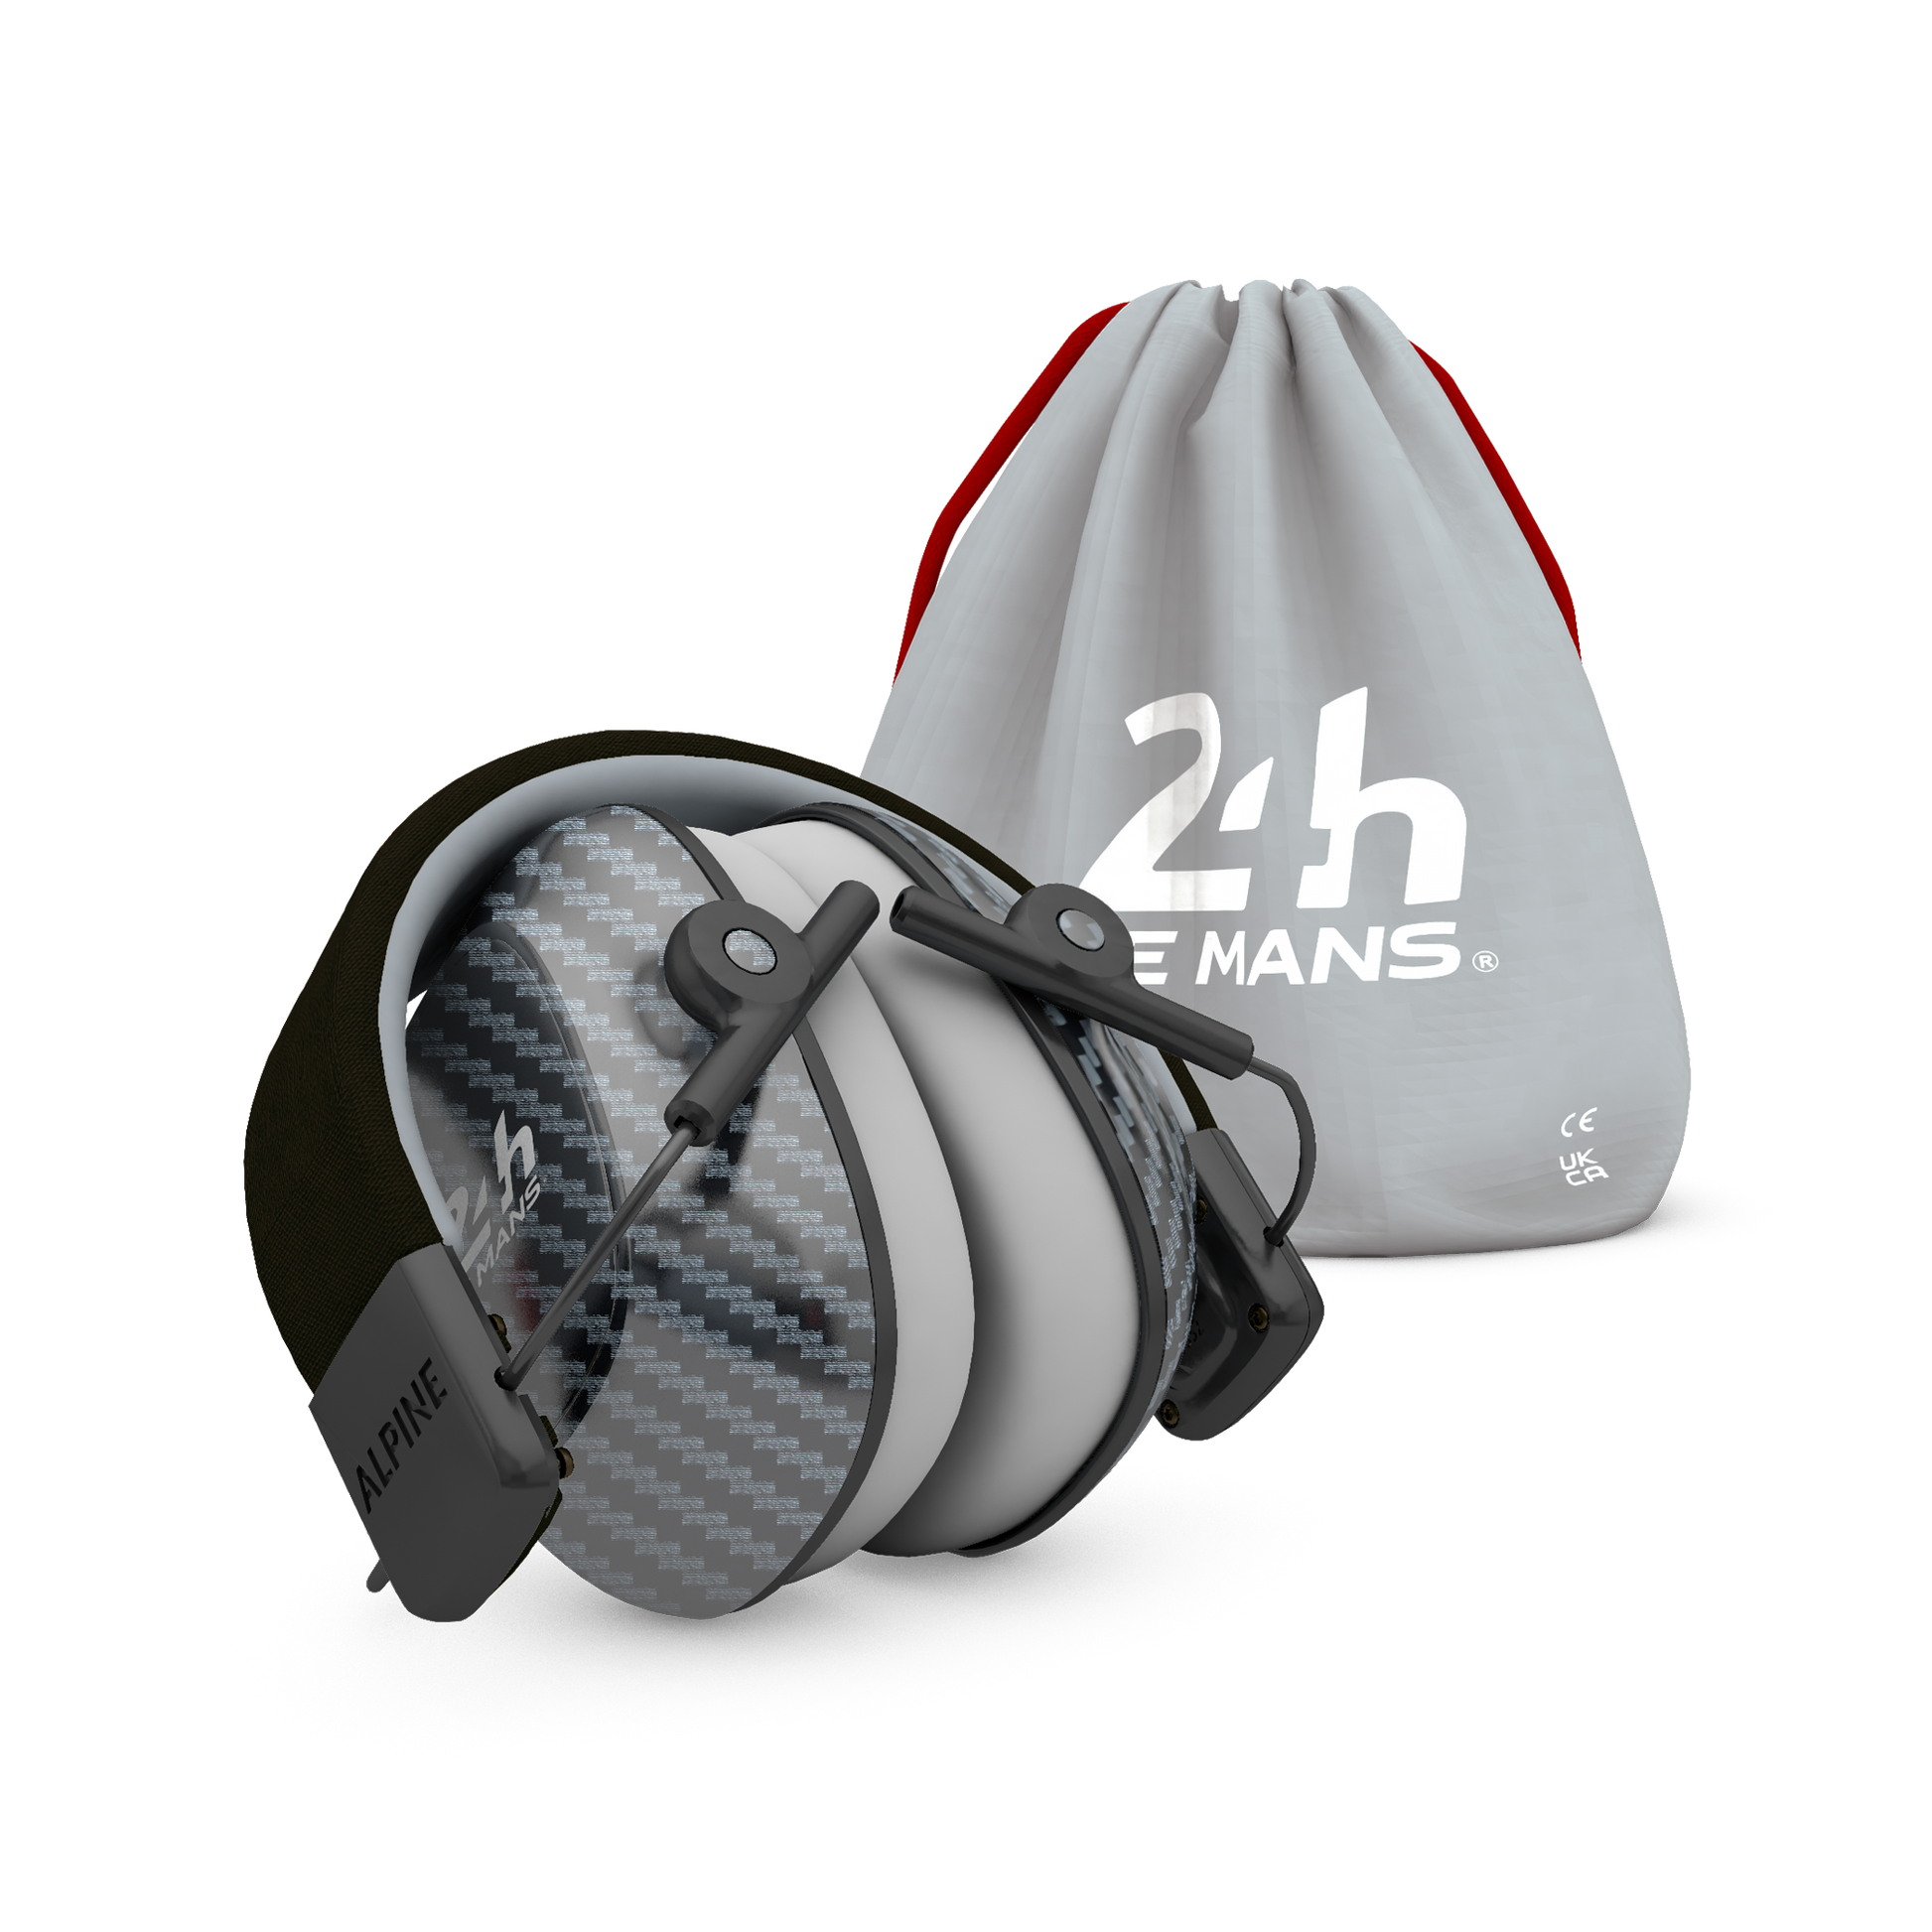 Racing Muffy 24H Le Mans Alpine Protection Auditive Bouchons d’oreilles Casque anti-bruit red dot award protéger votre oreille  Formula1 MotoGP 24h le mans 